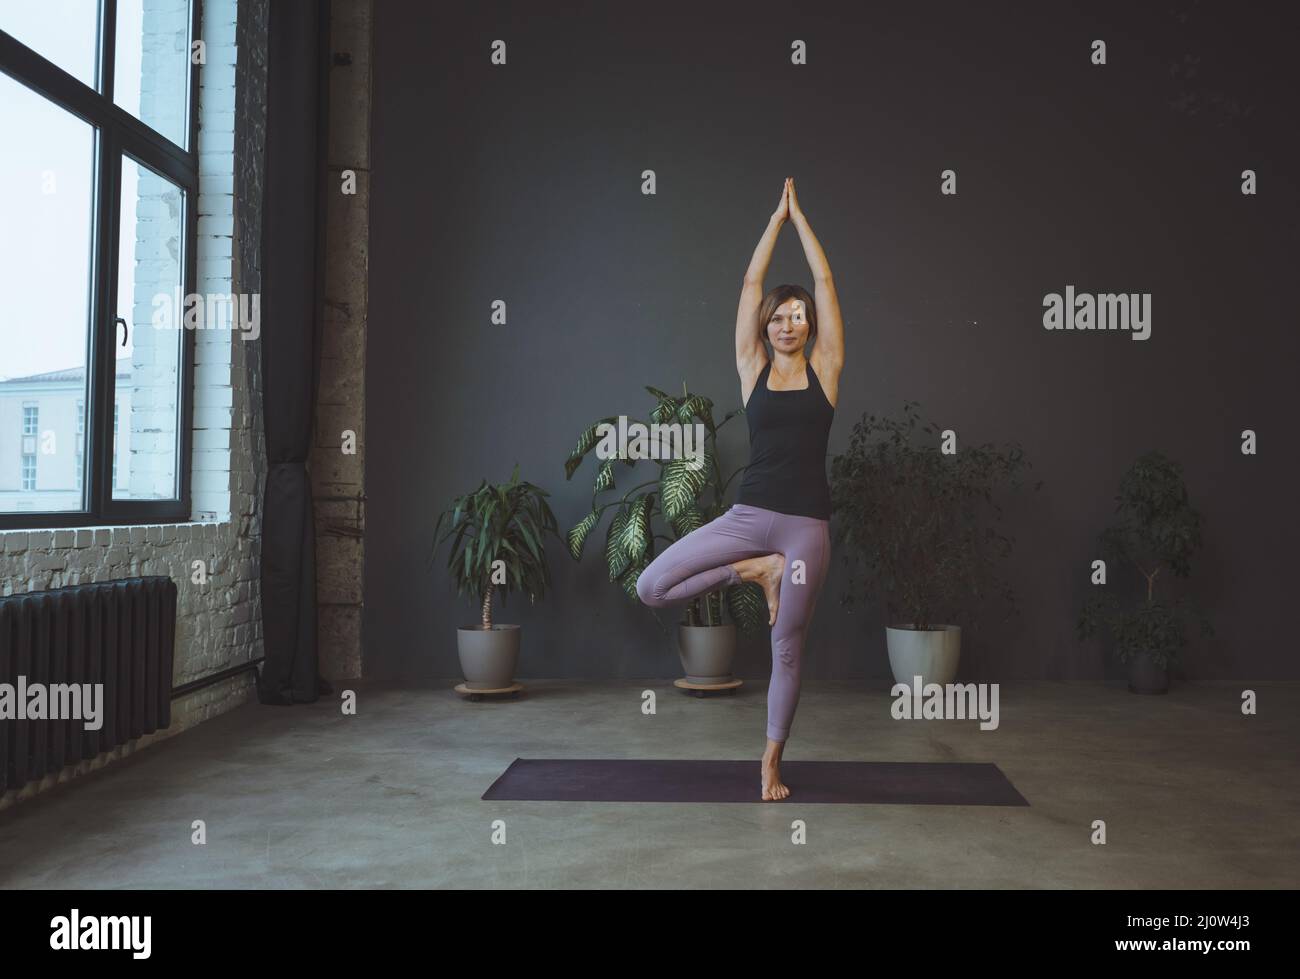 Consciente del cuerpo. Cuerpo humano, posición física, concepto de bienestar. Yoga, la mujer joven está parada en una asana. Foto de stock